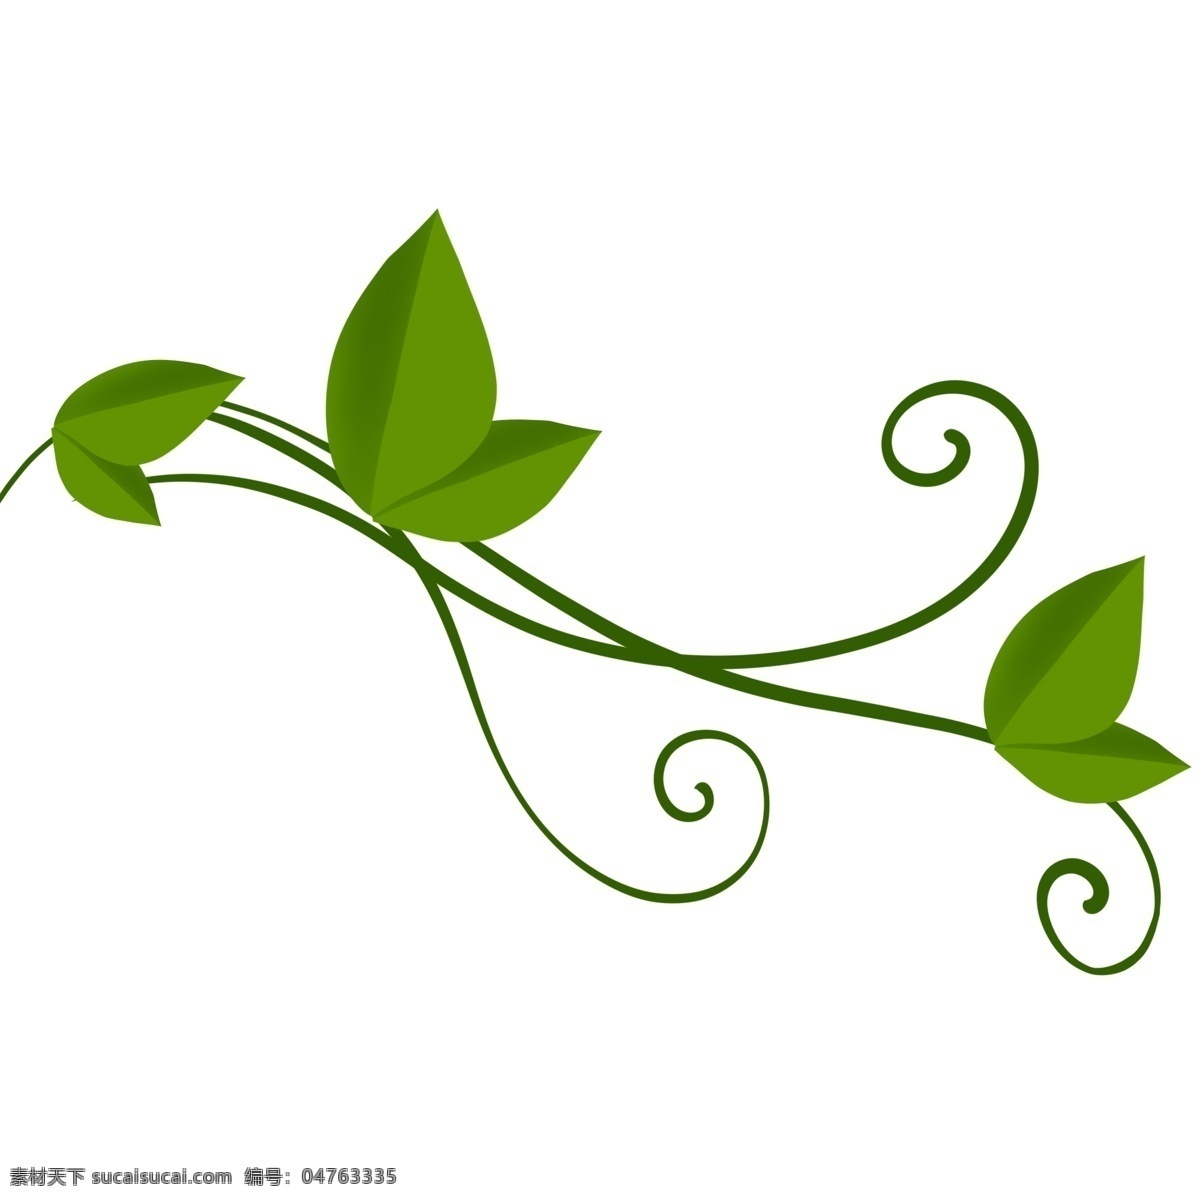 蔓藤 绿色植物 叶子 蔓藤叶子 嫩芽 美丽 植物 中药 墨绿 天然 大自然 草本植 装饰 贴画